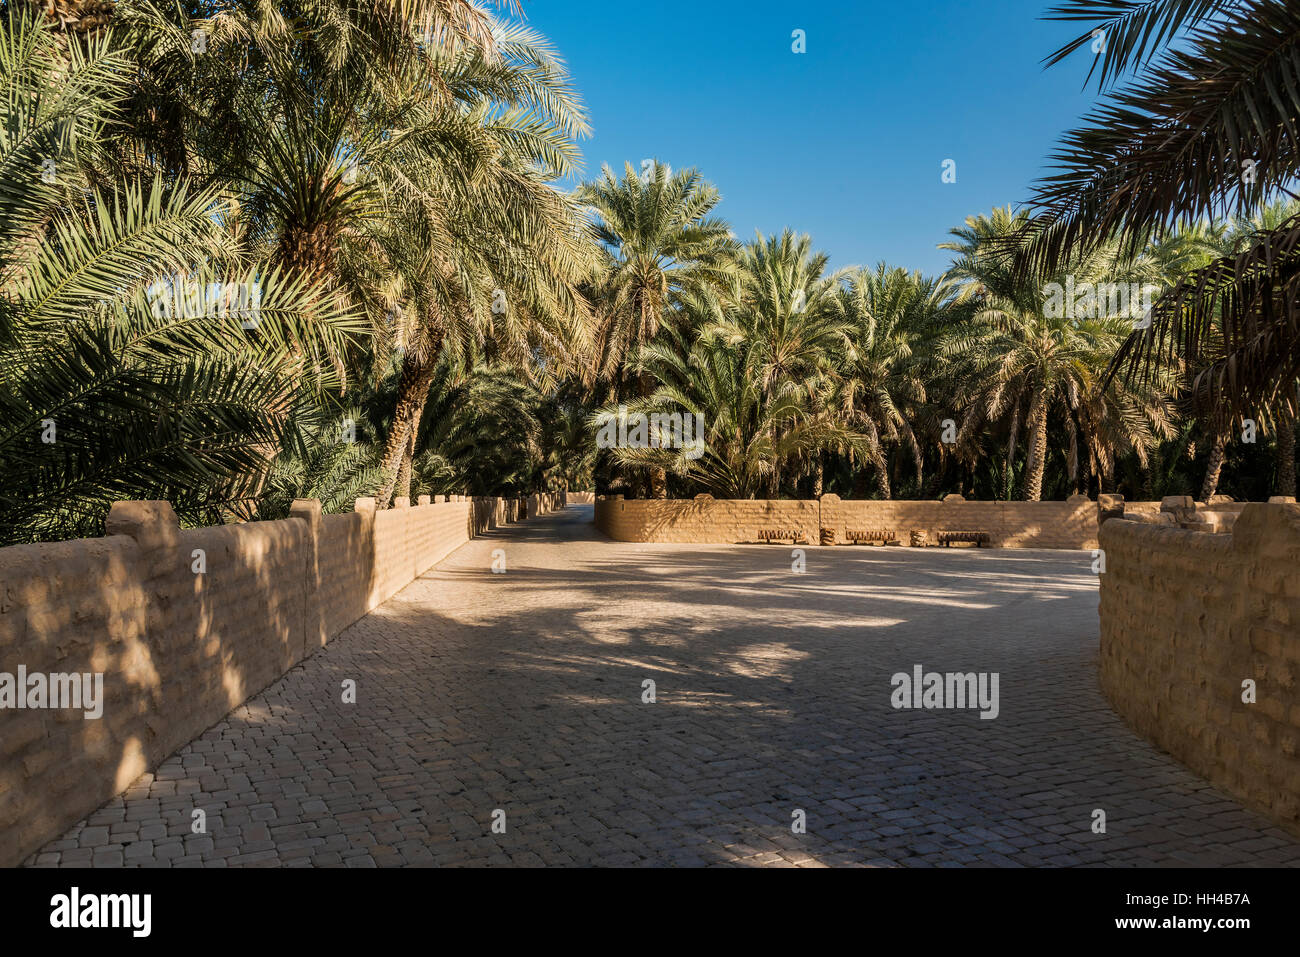 Al Ain Oasis, Al Ain, United Arab Emirates Stock Photo